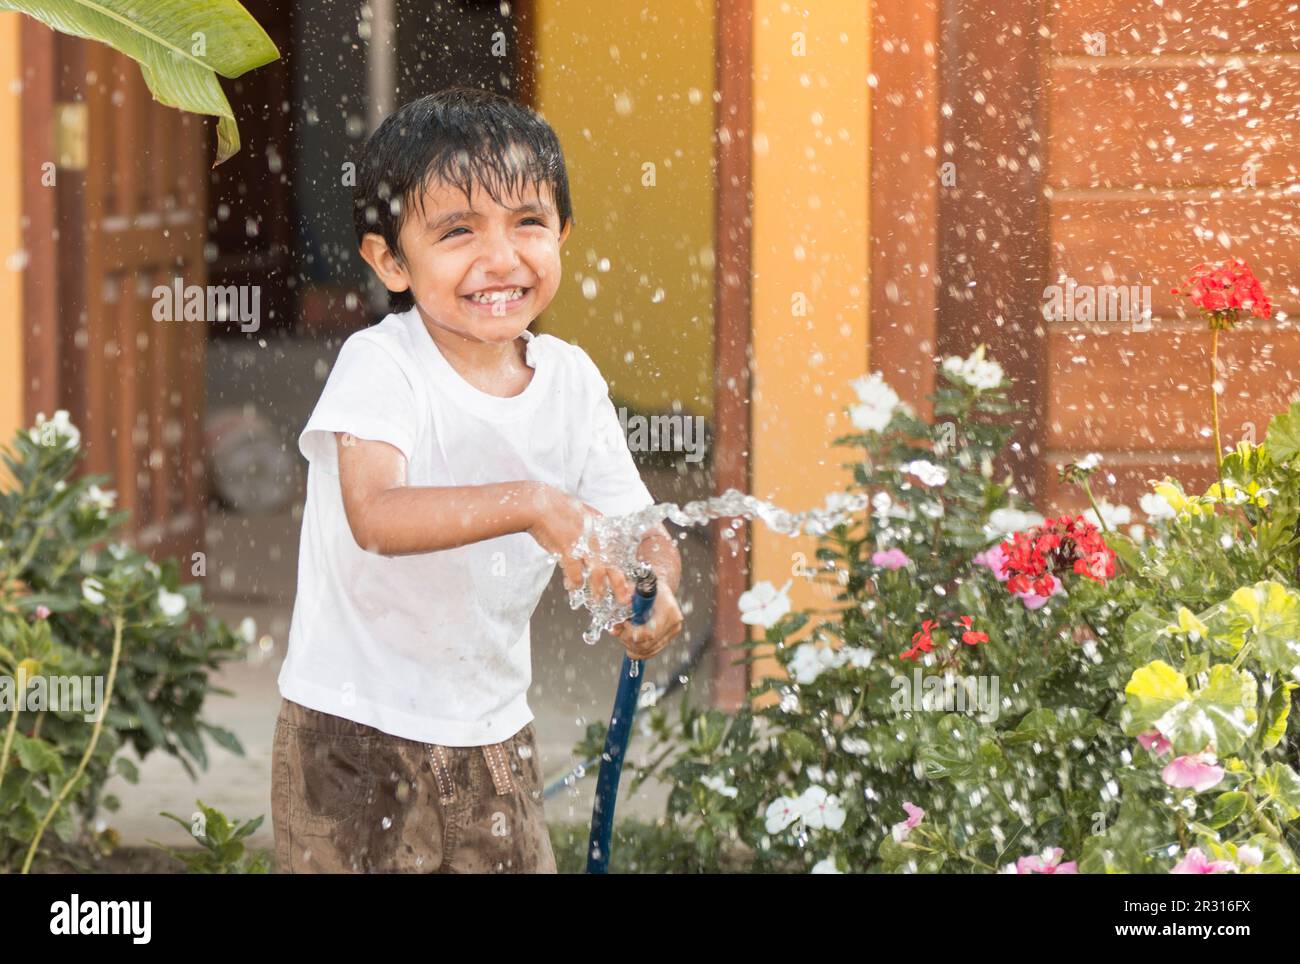 Das Kind spielt mit Wasser, während es den Garten bewässert Stockfoto